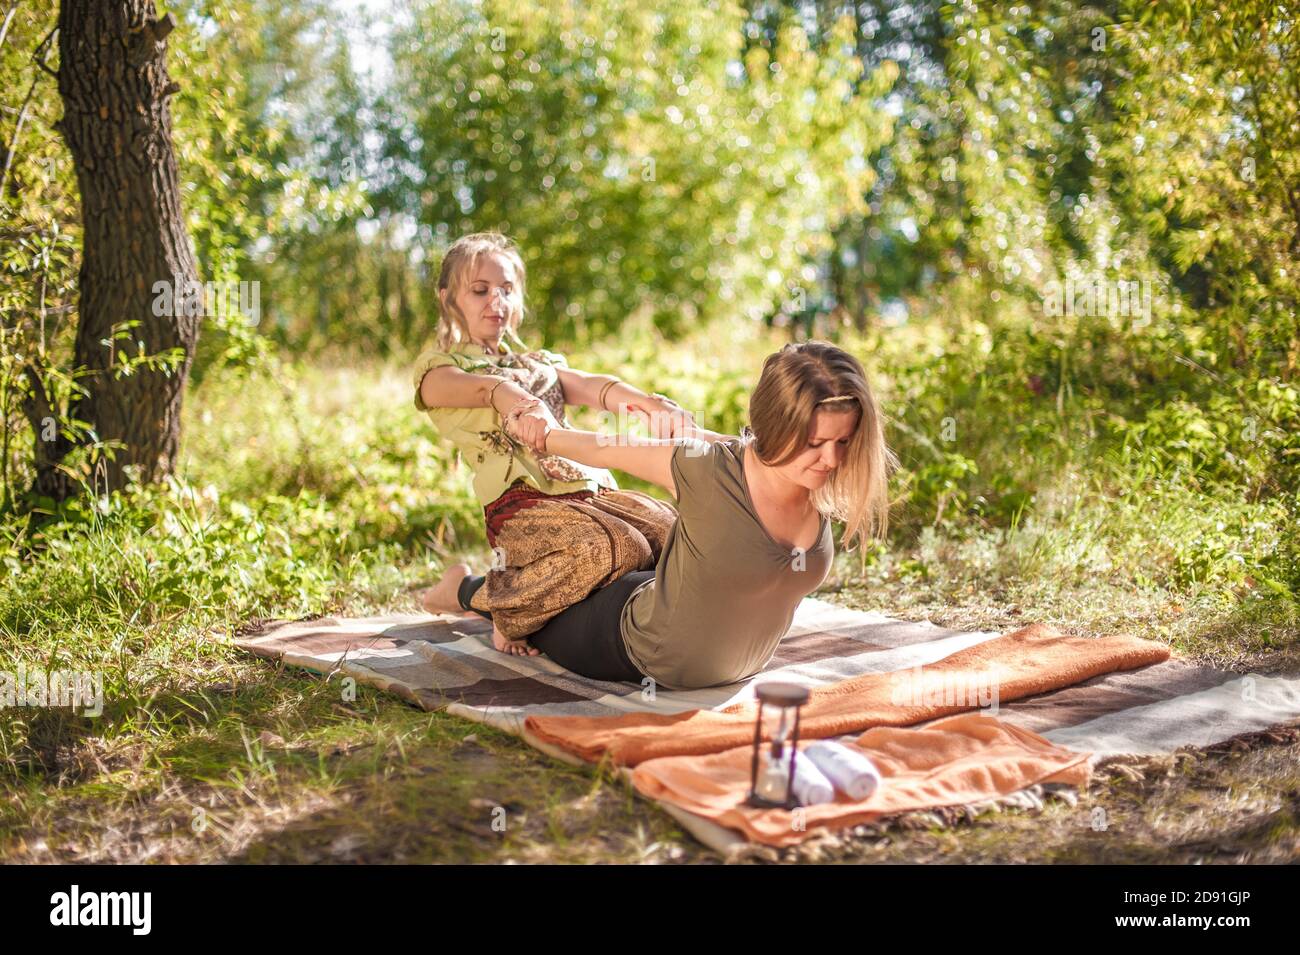 Massageexperte wendet ihre Massagefähigkeiten auf ihren Klienten auf dem Gras an. Stockfoto